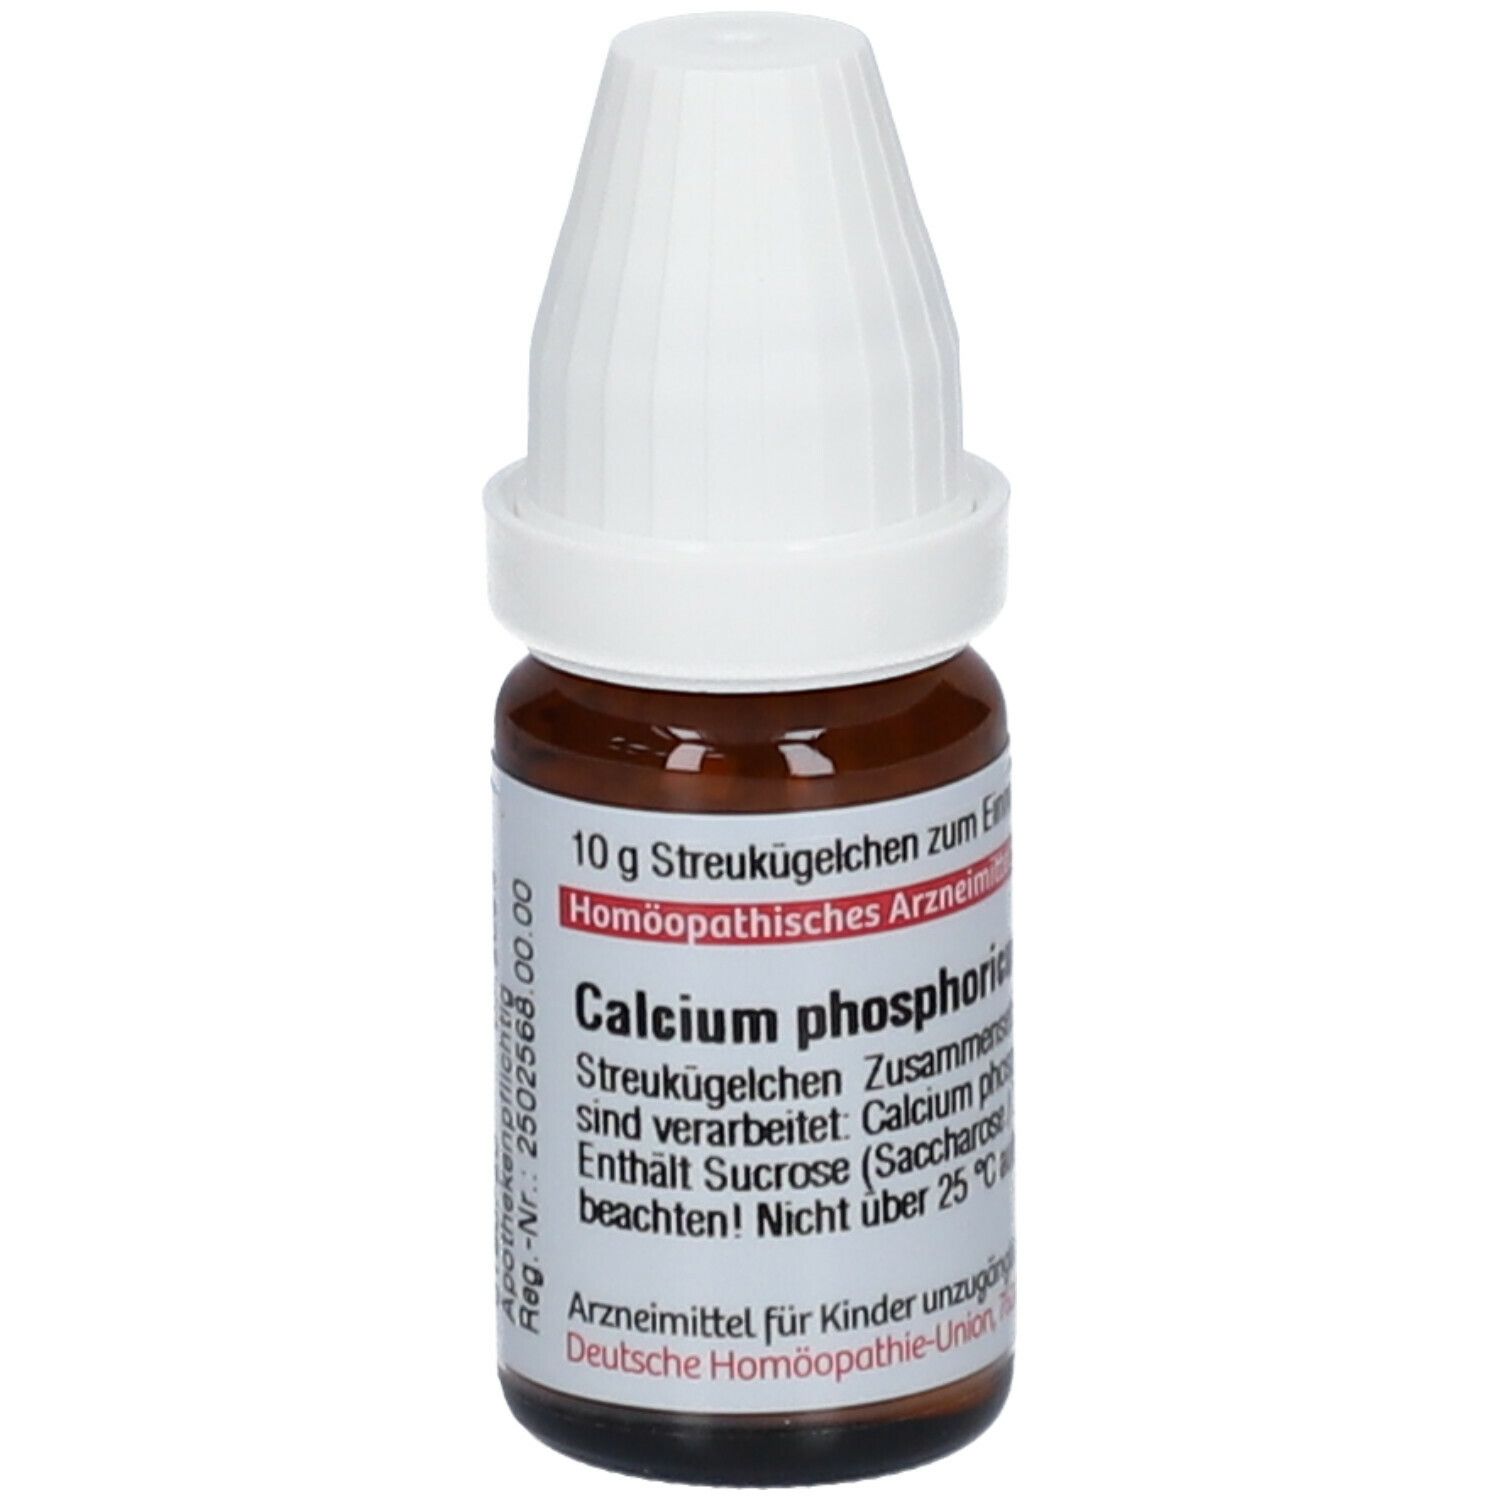 DHU Calcium Phosphoricum C12